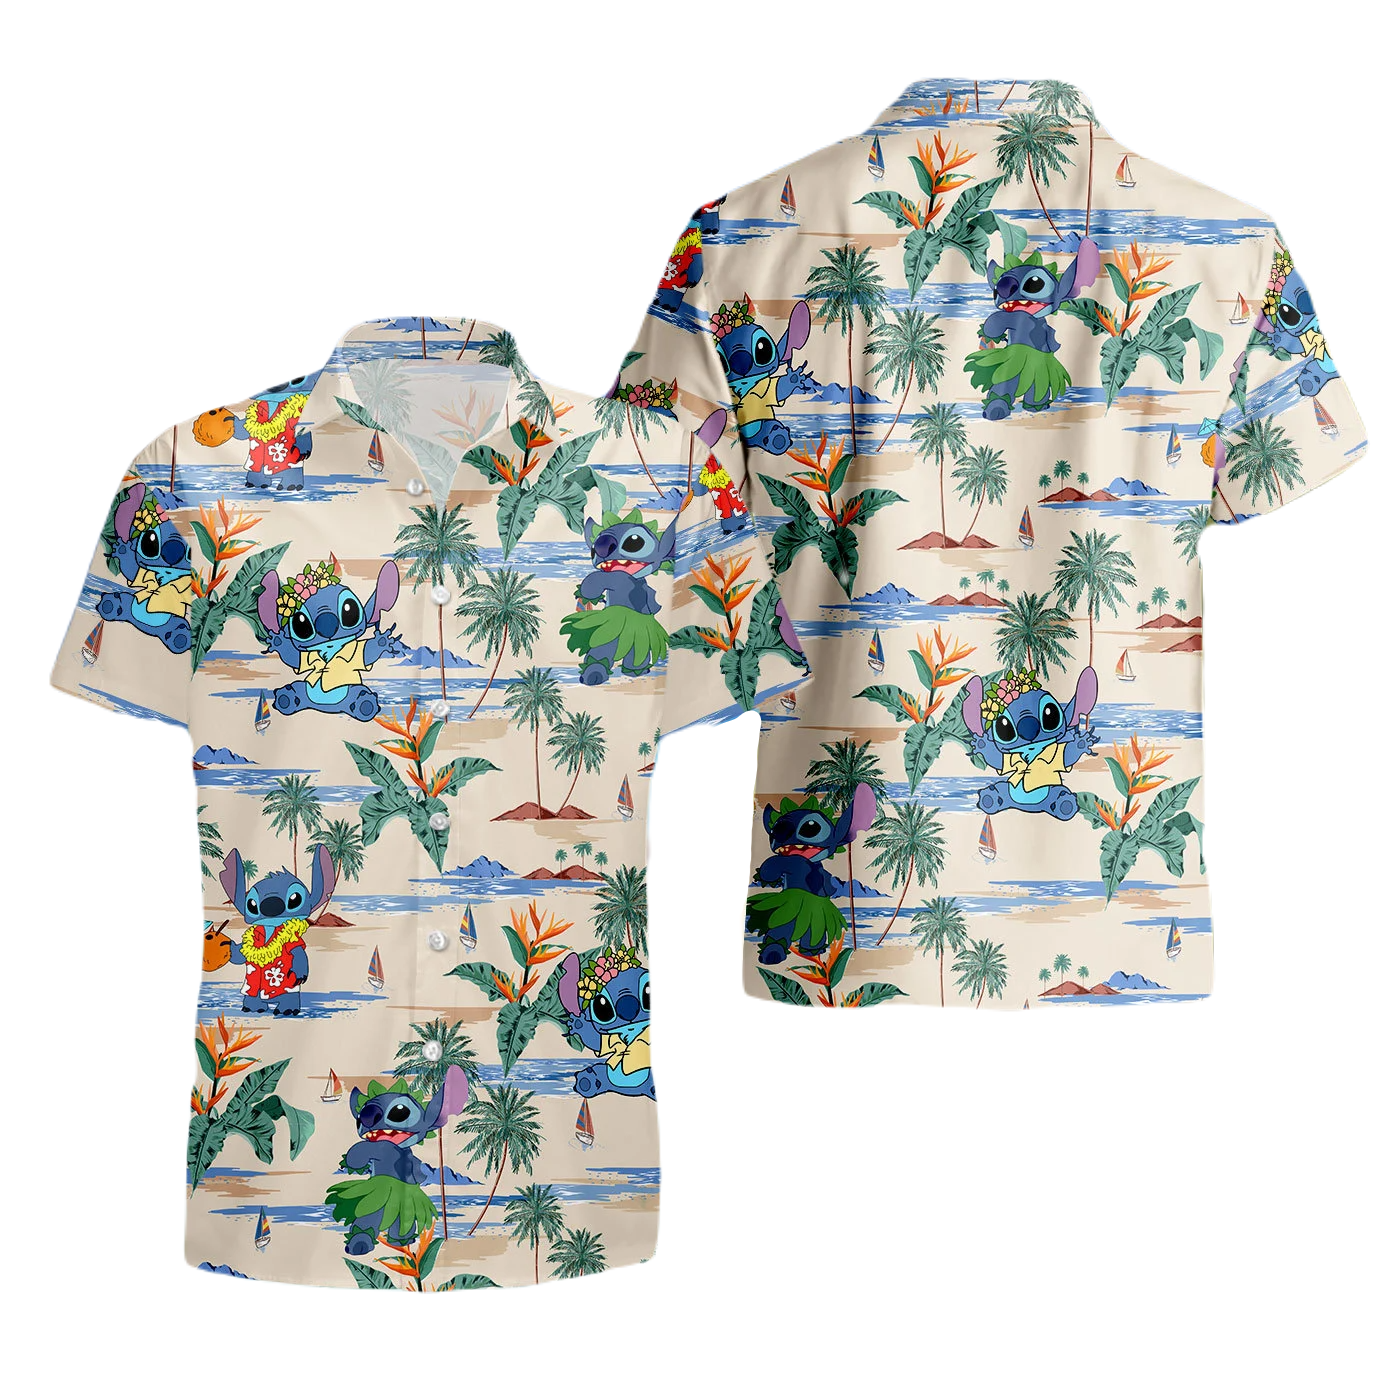 Stitch Hawaii Shirt Tropical Beach Stitch Pattern Aloha Shirt Colorful Unisex Adults New Release